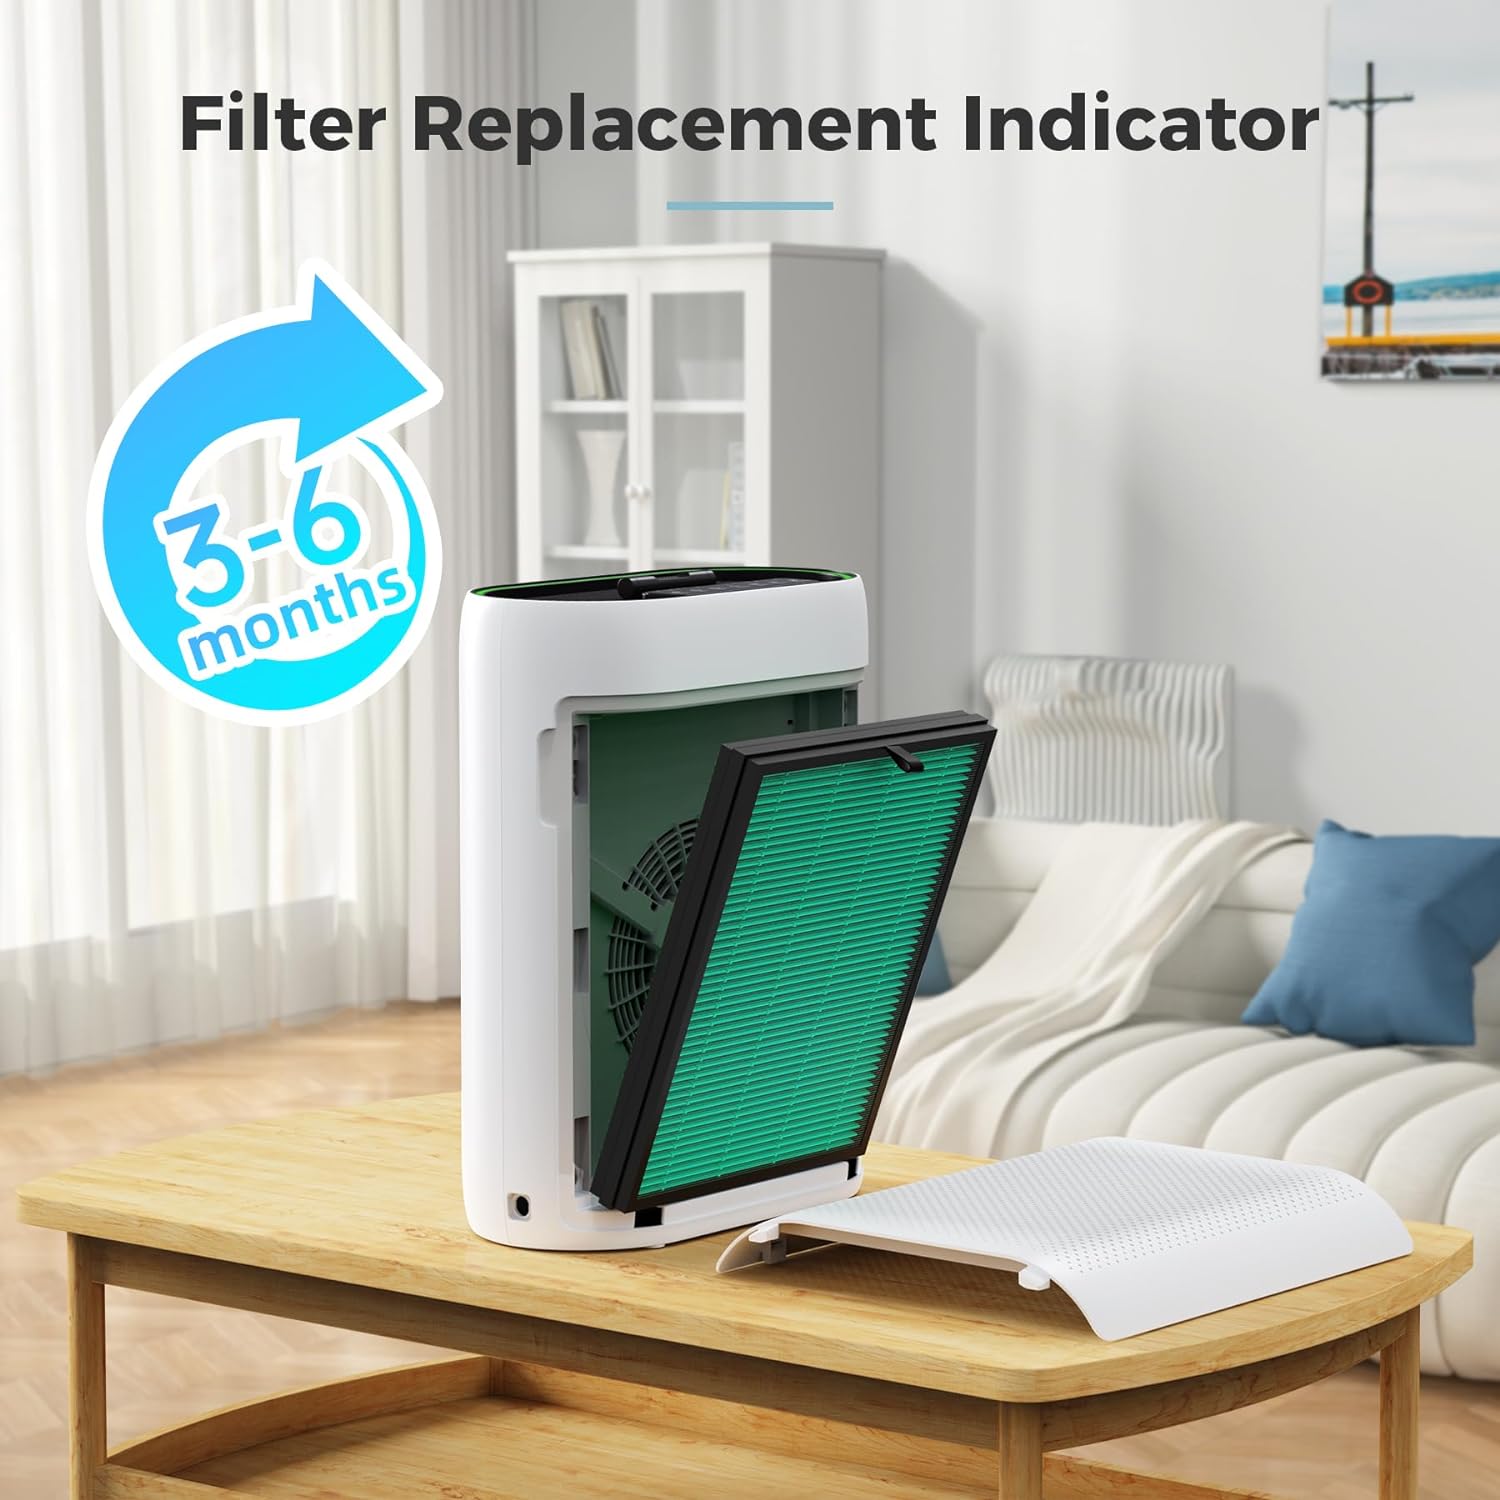 AROEVE Air Filter Replacement | MKD05- Pet Dander Version